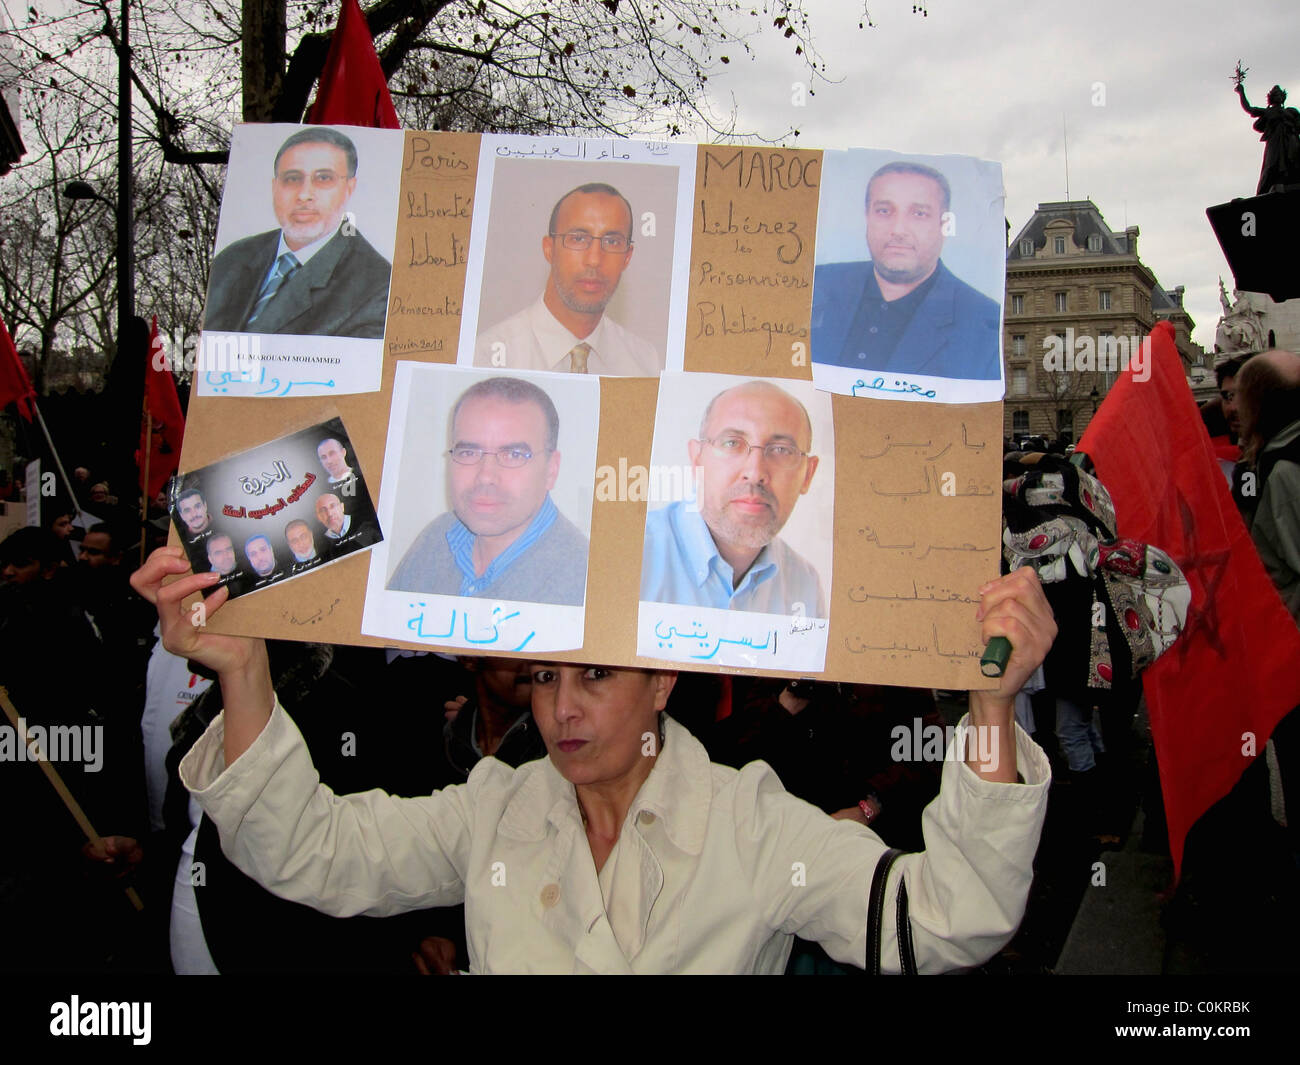 Paris, France, démonstration en Libye, en appui à la révolution libyenne, marchage des femmes, manifestant, Holding Sign, printemps arabe, politique Banque D'Images